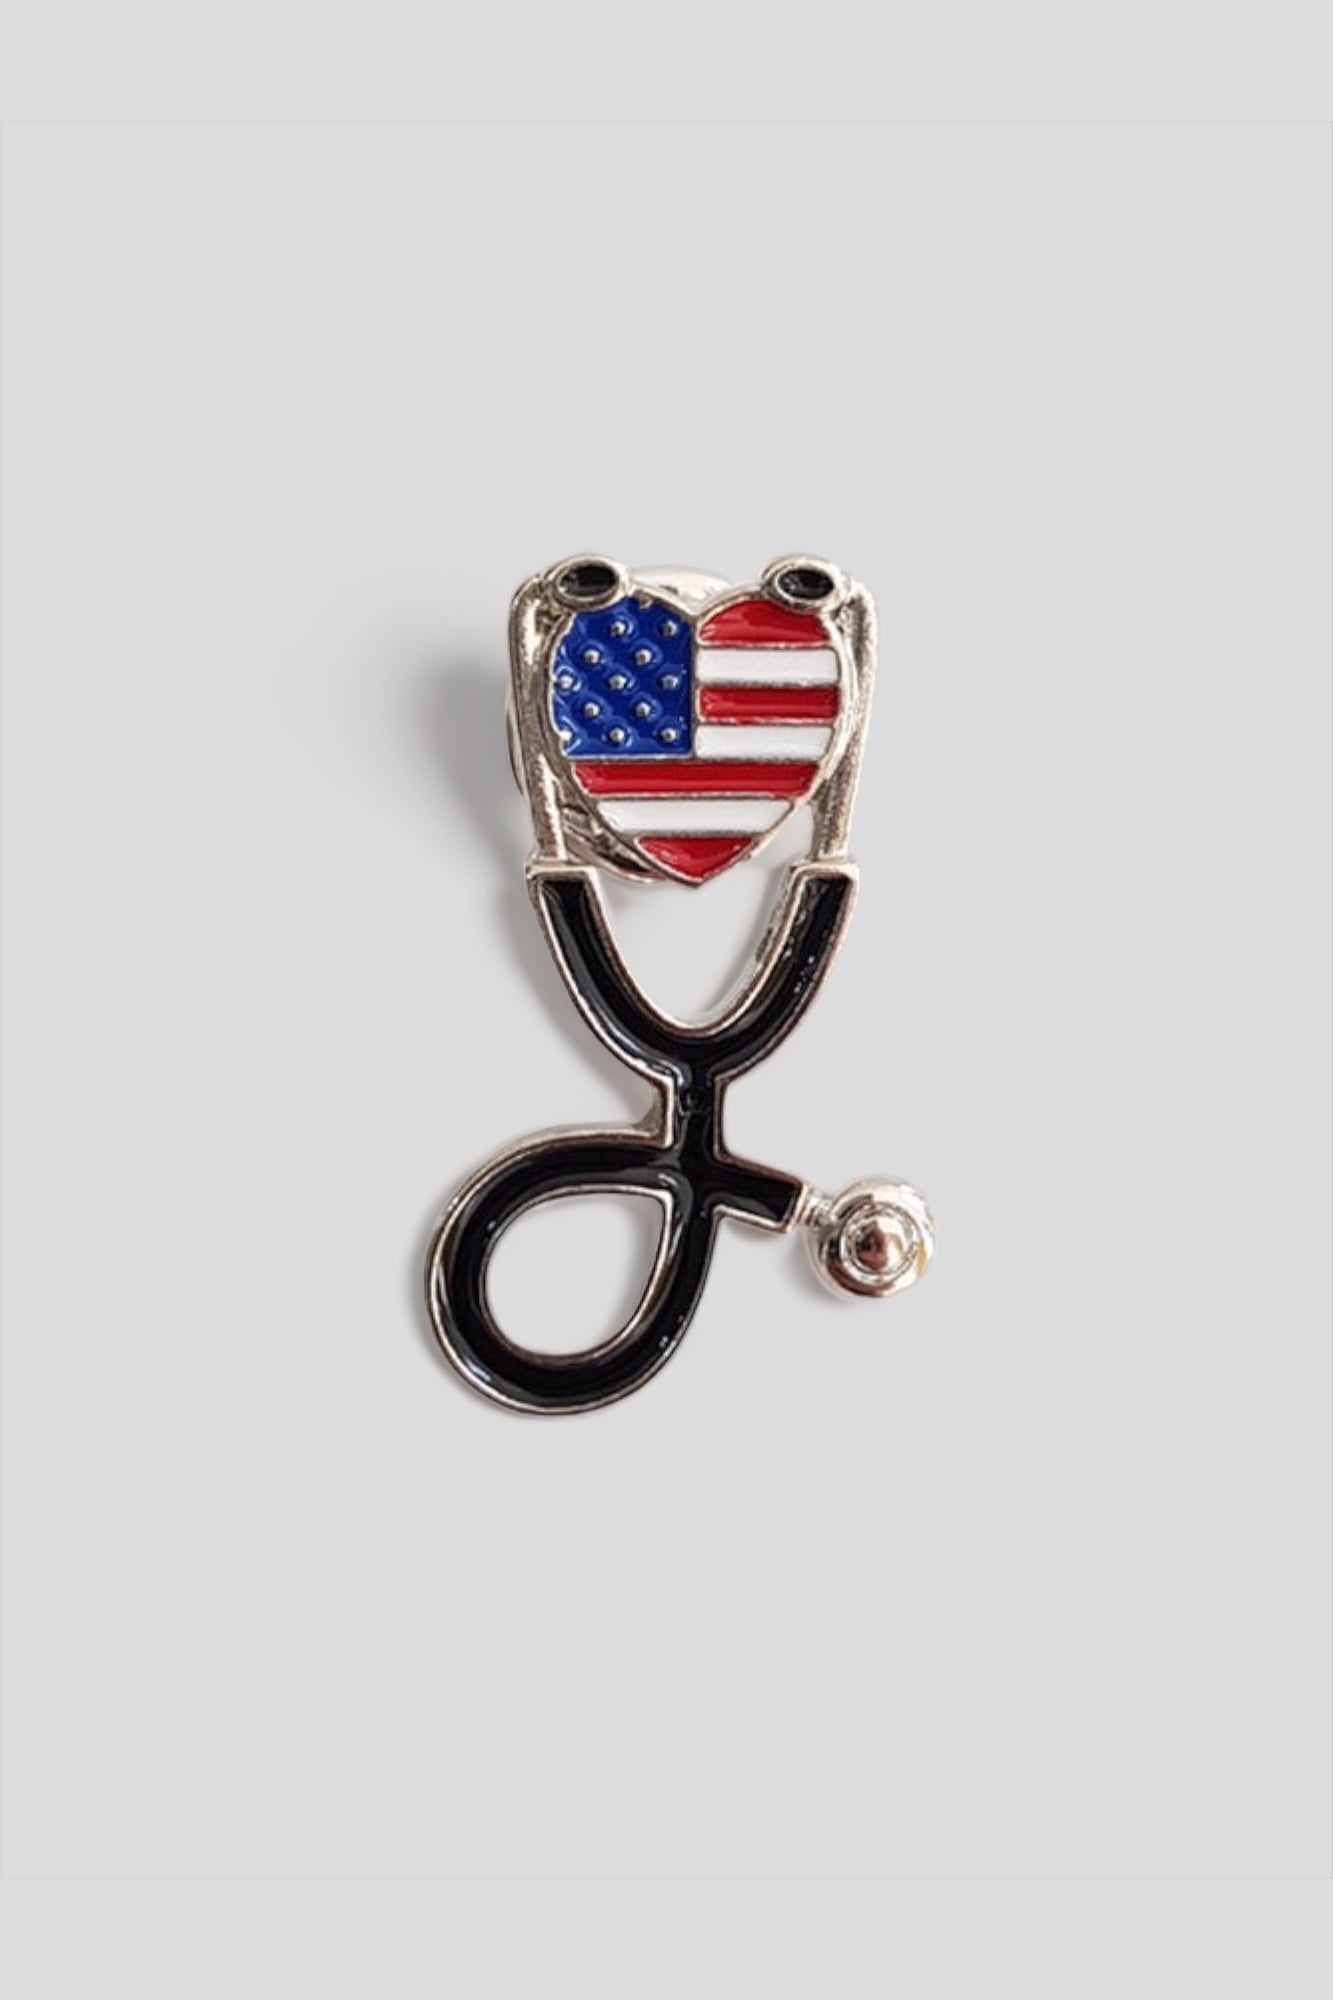 American ( USA ) flag pin 